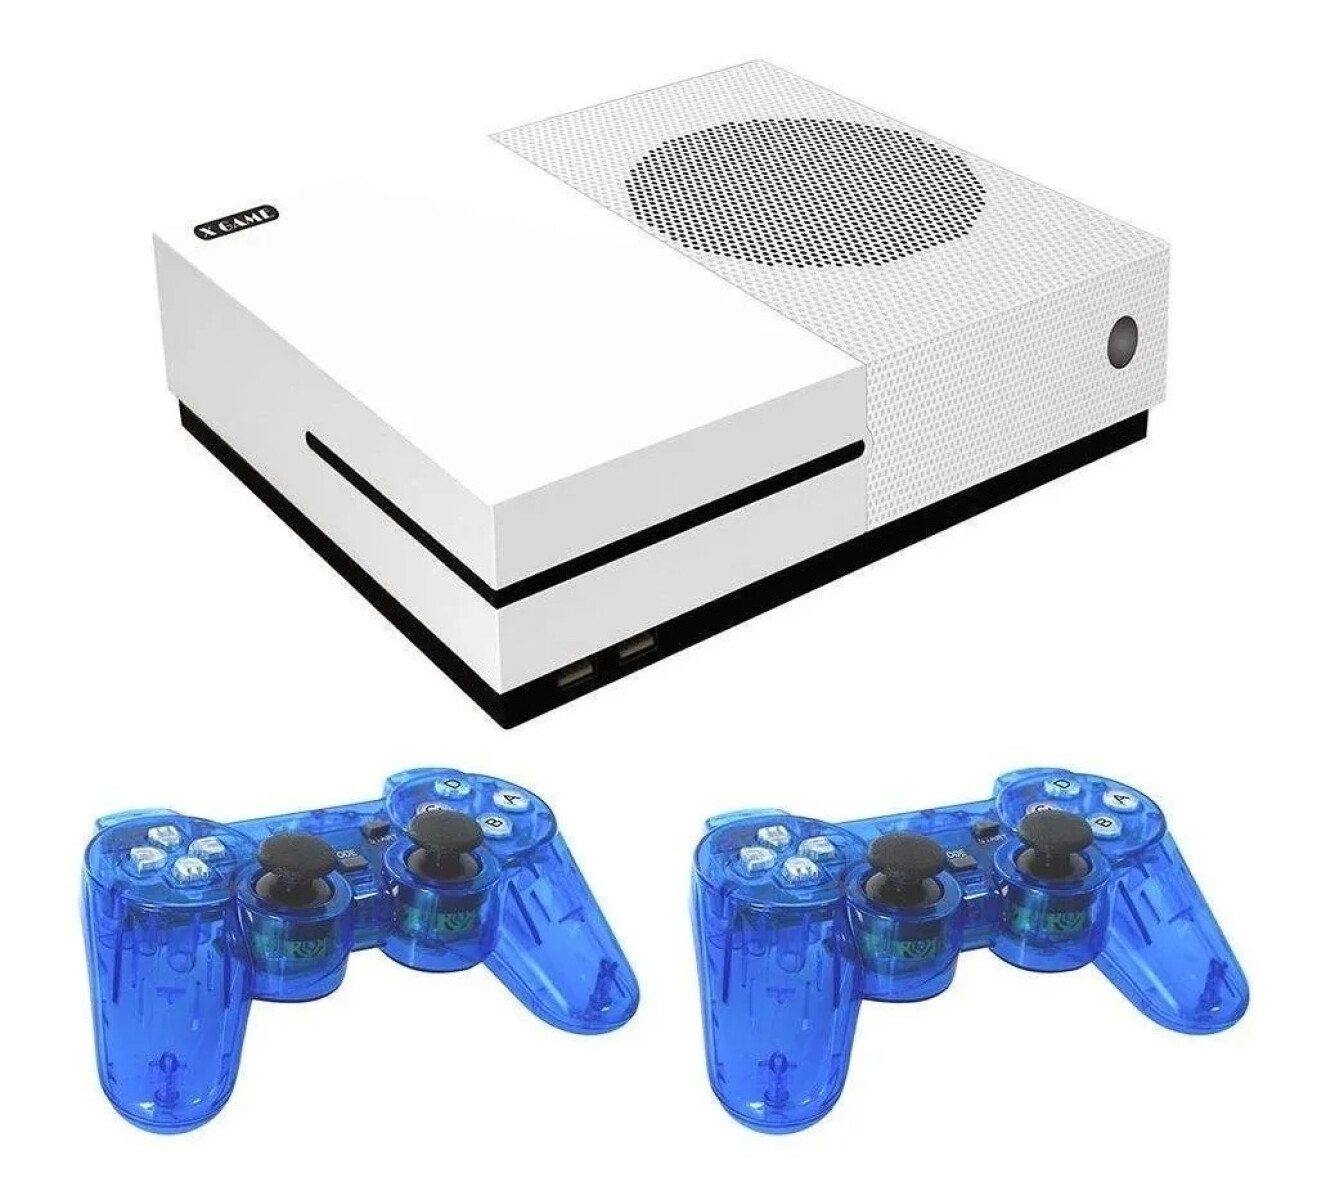 Consola Xgame 600 Juegos Calidad Hd Retro - 001 